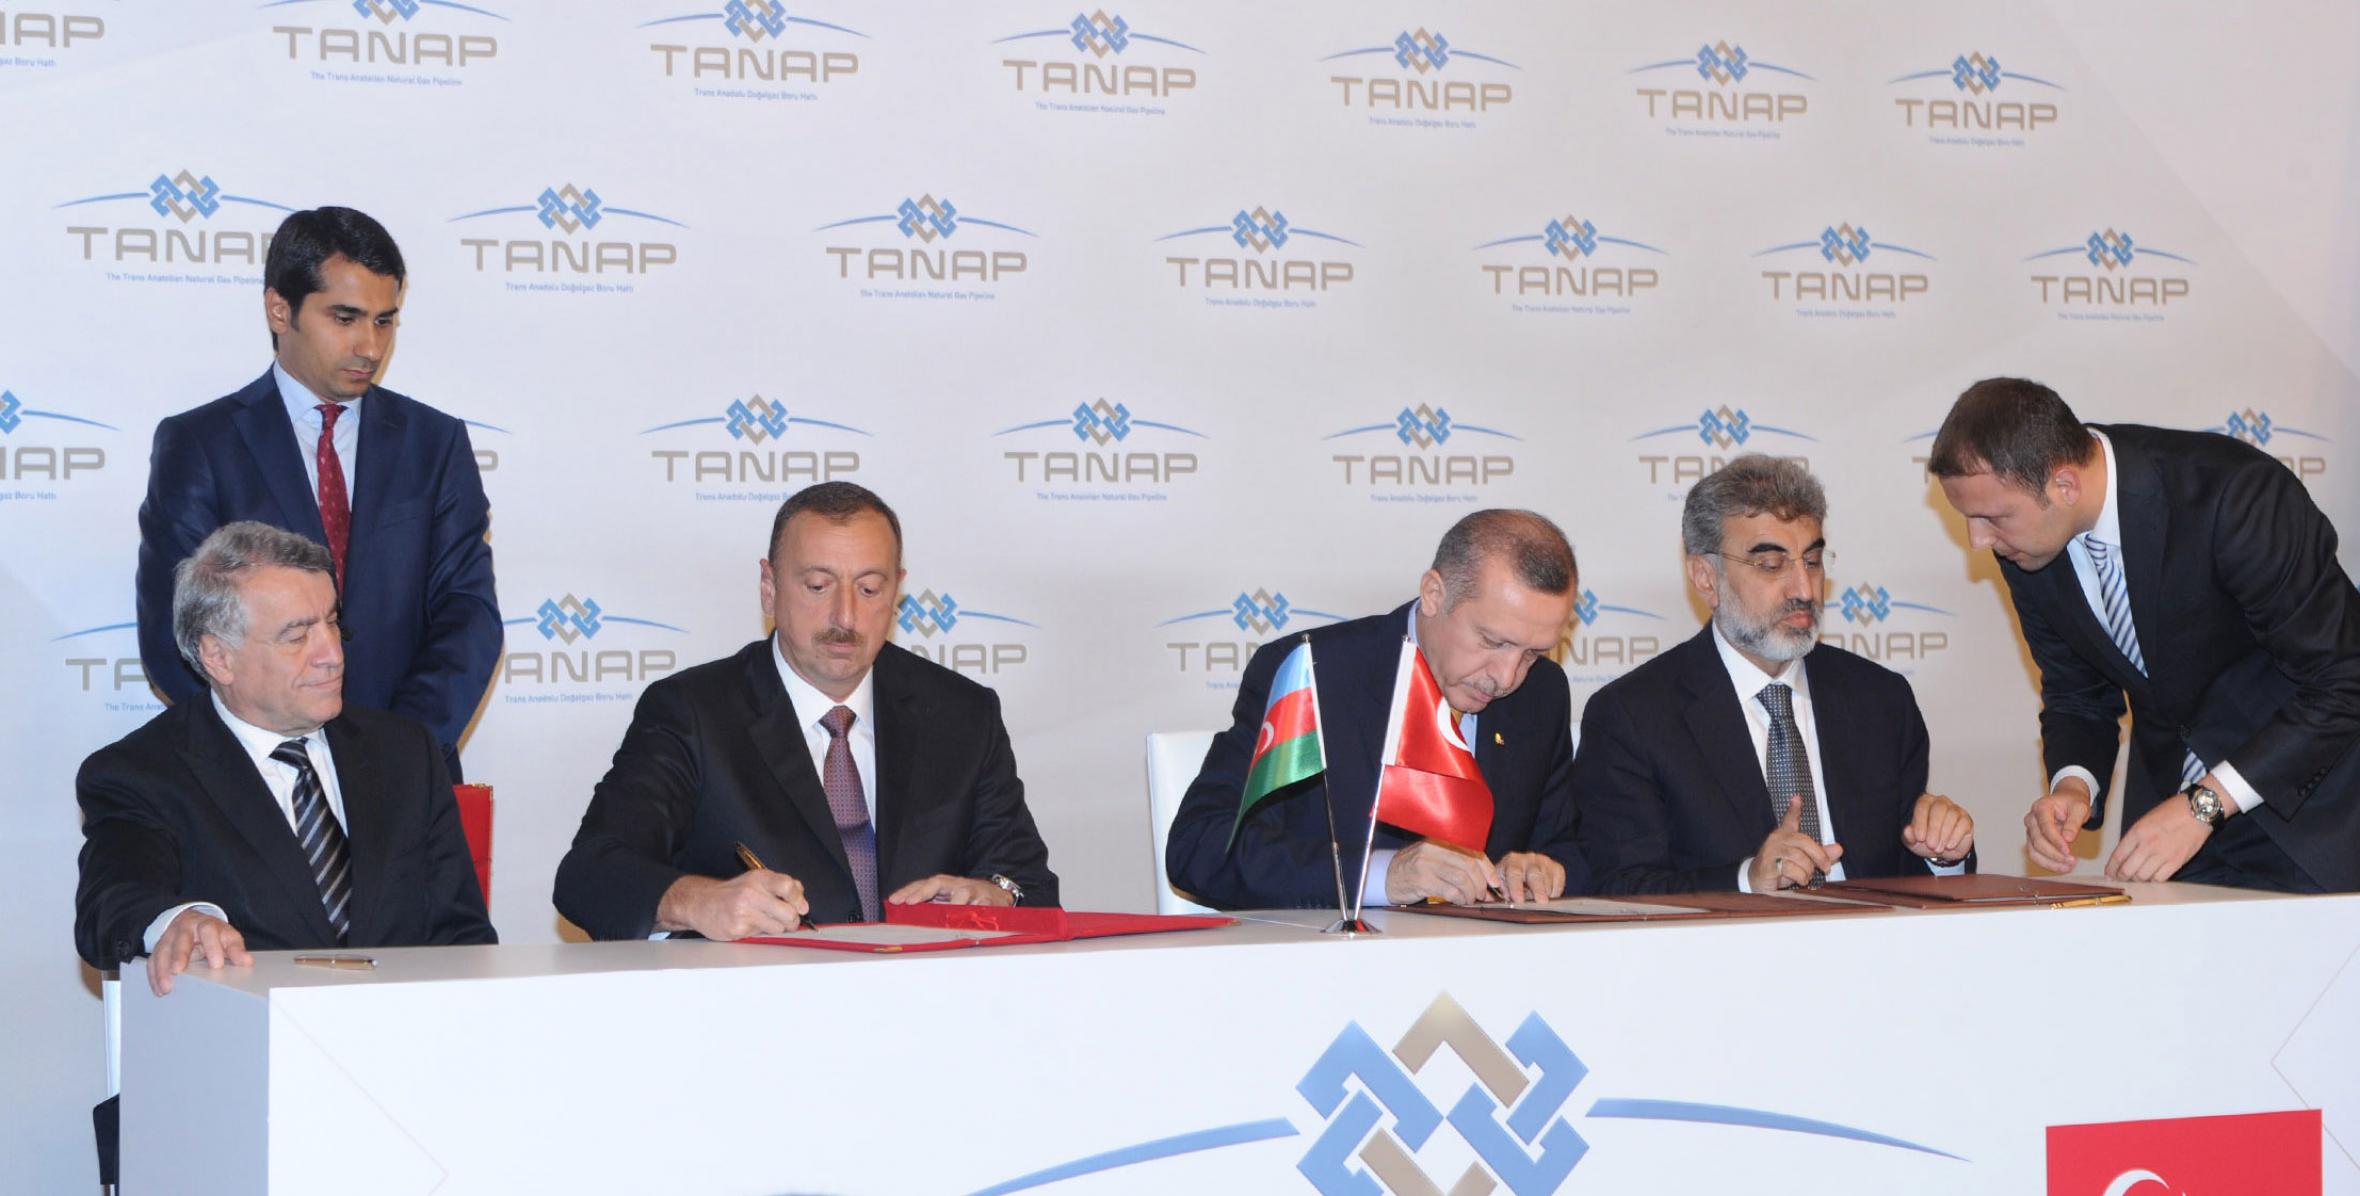 С участием Ильхама Алиева и премьер-министра Турции Реджепа Тайиба Эрдогана состоялась церемония подписания документов